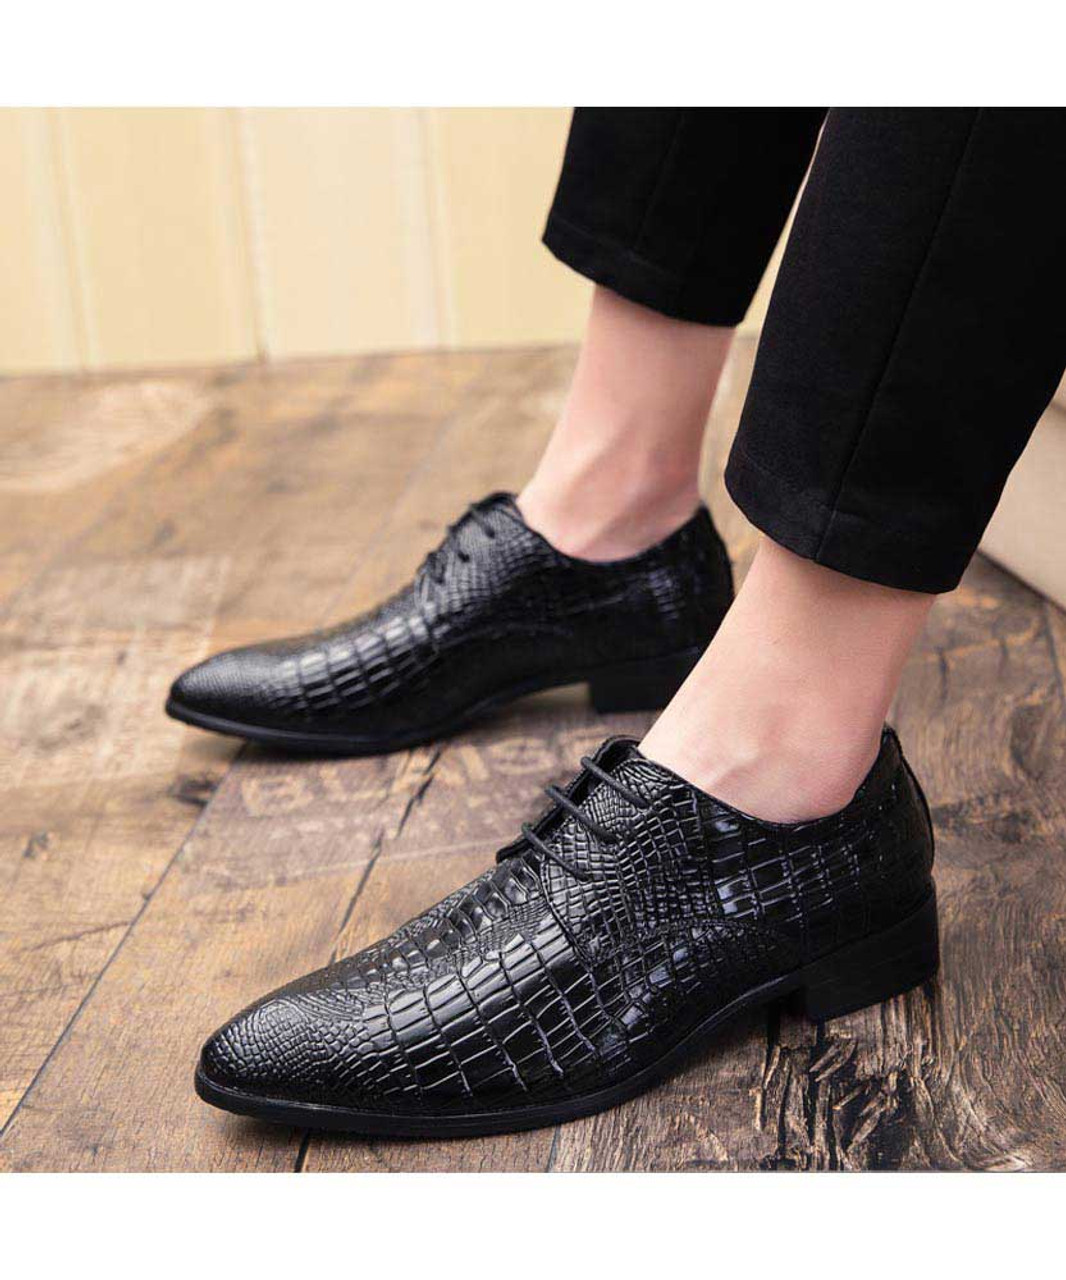 Black crocodile skin pattern leather derby dress shoe | Mens dress ...